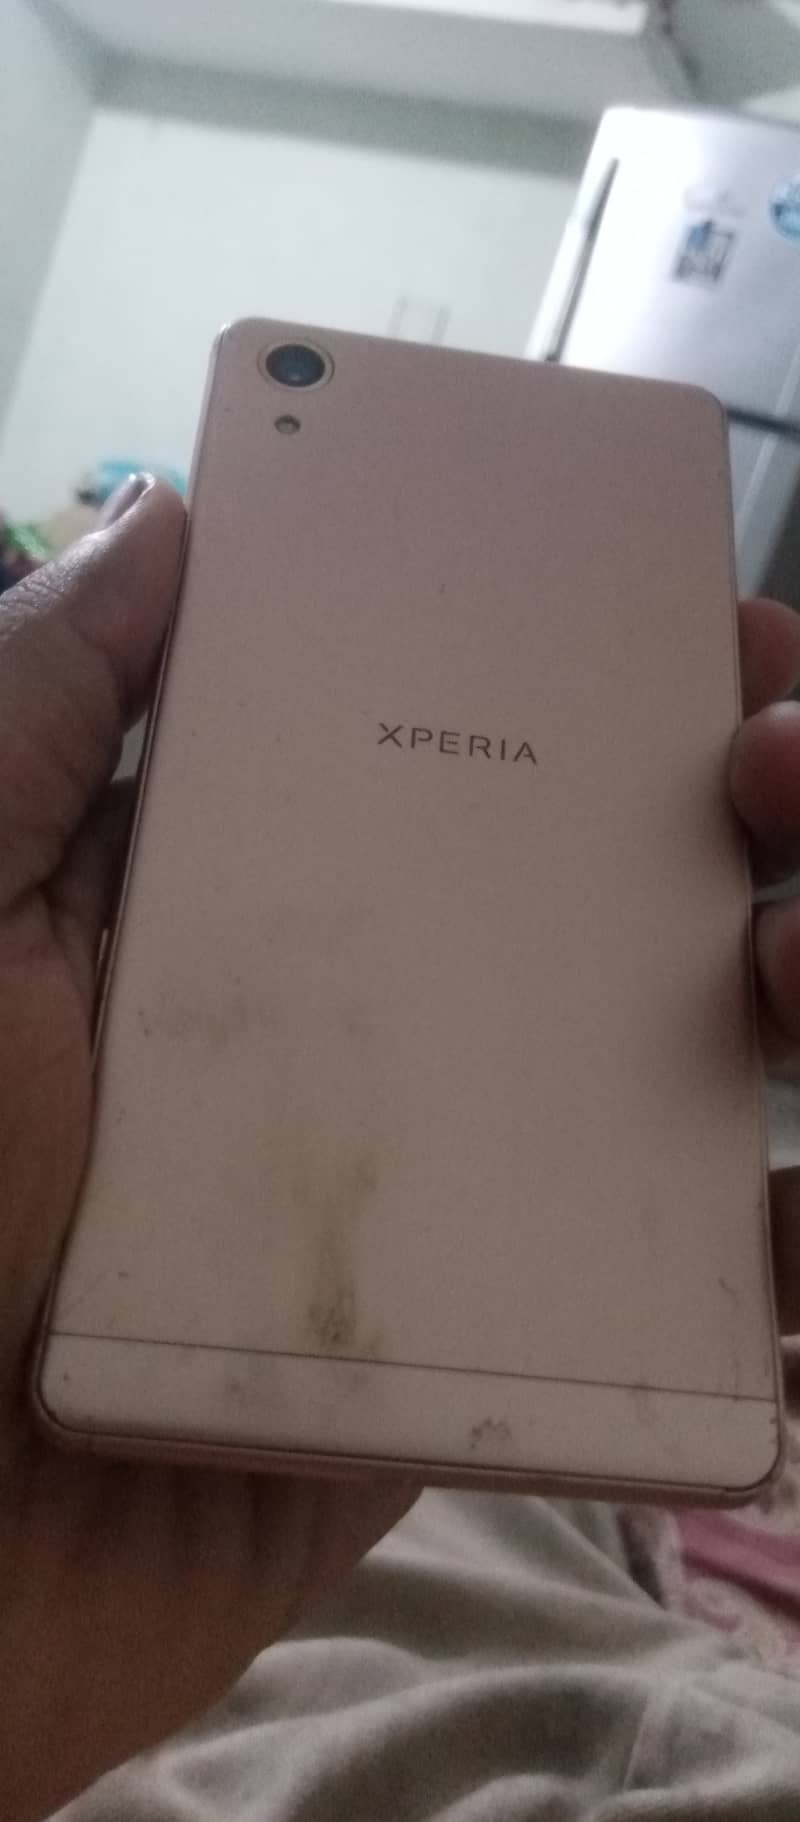 Sony Xperia broken 7